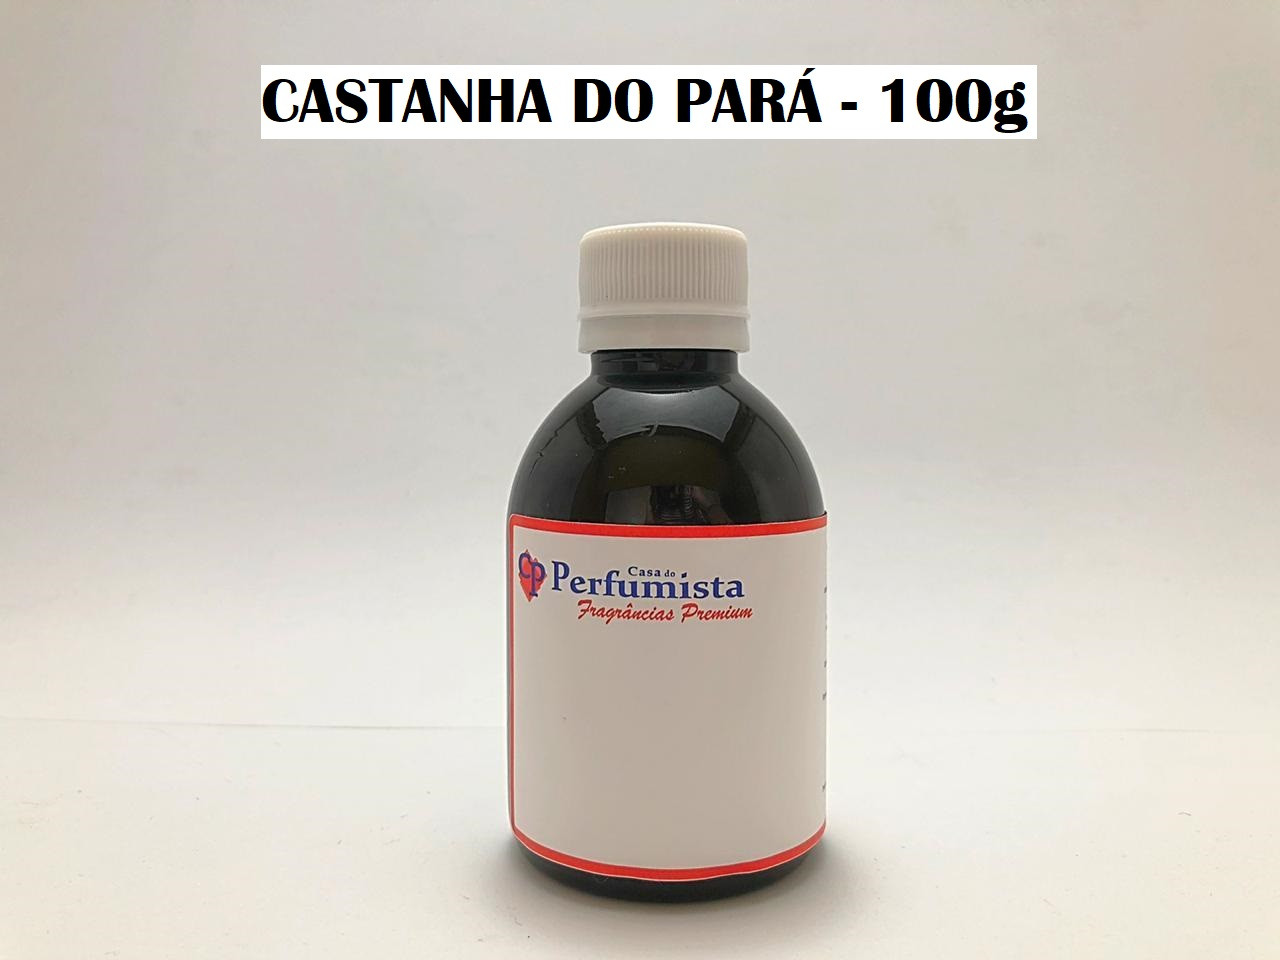 CASTANHA DO PARÁ - 100g